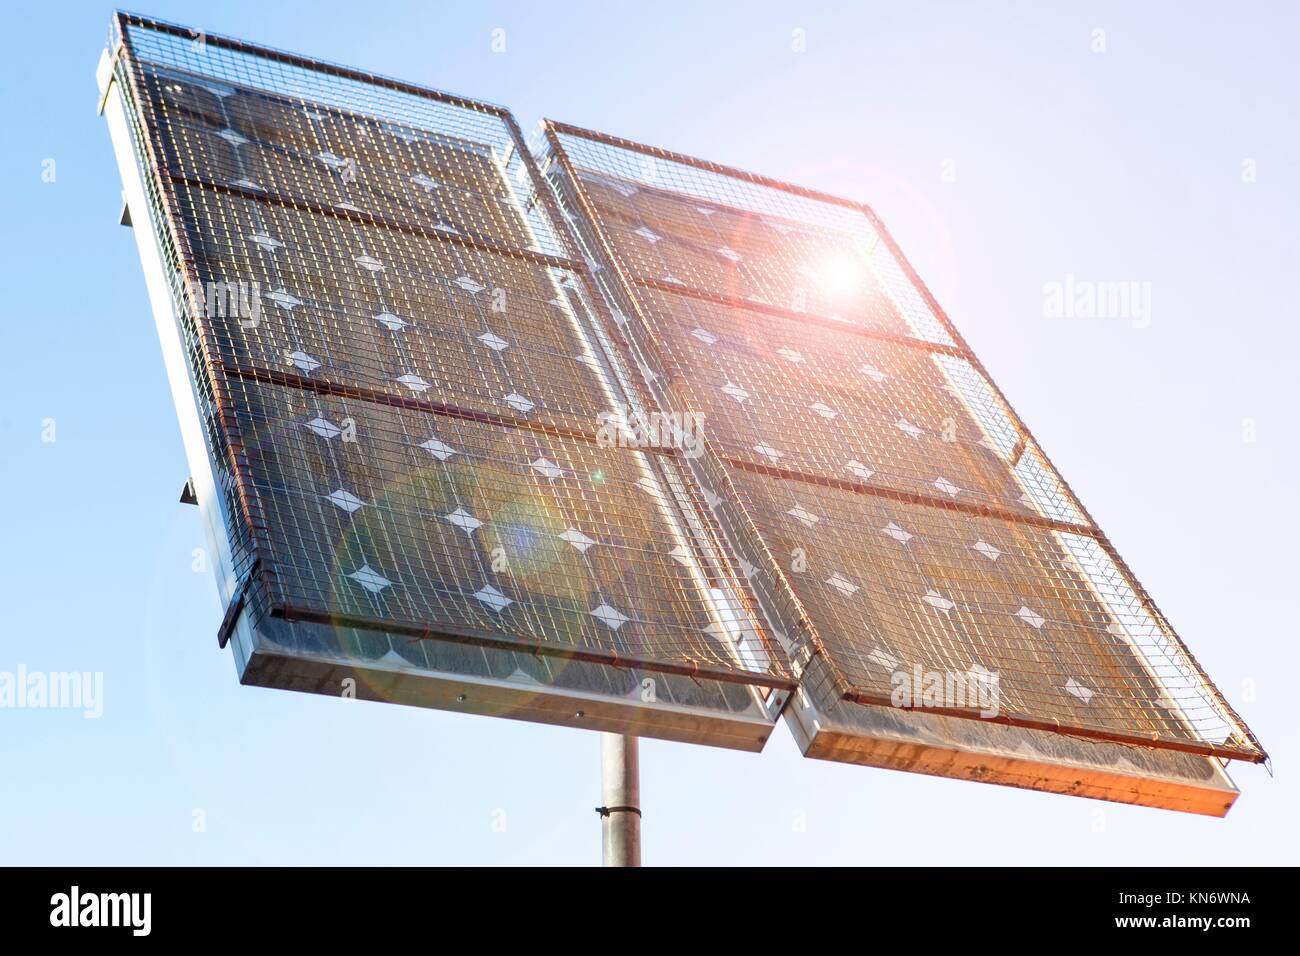 Panel solar instalado en la parte superior de un poste con el enrejado metálico protegido e iluminado con el sol brilla. Foto de stock